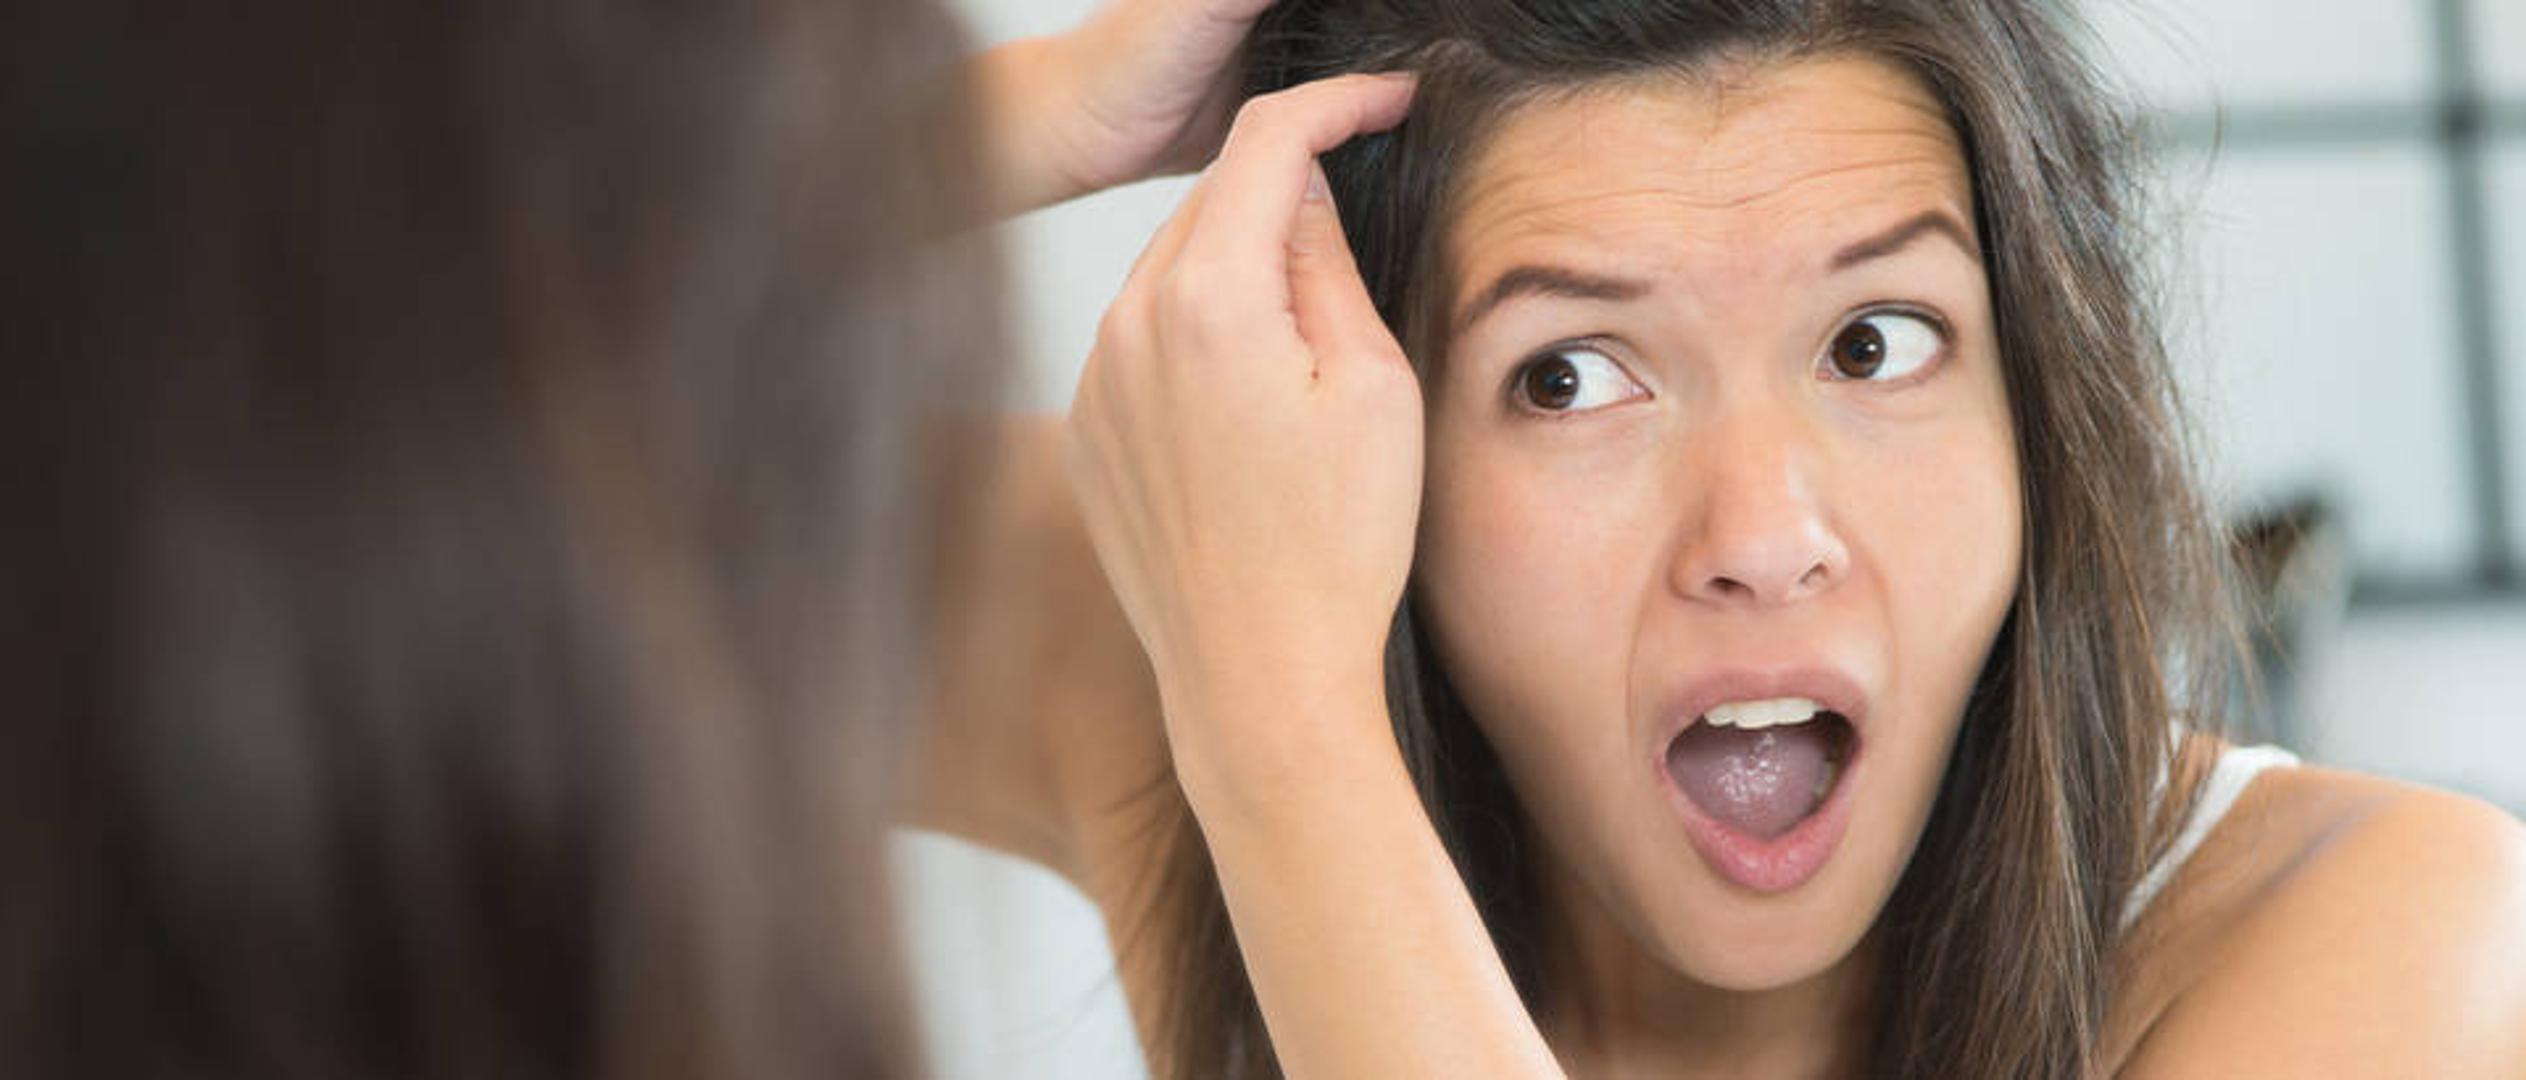 Je li jedini način da se riješite sijedih vlasi - bojanje kose? Ako je vjerovati beauty blogericama, nije. 